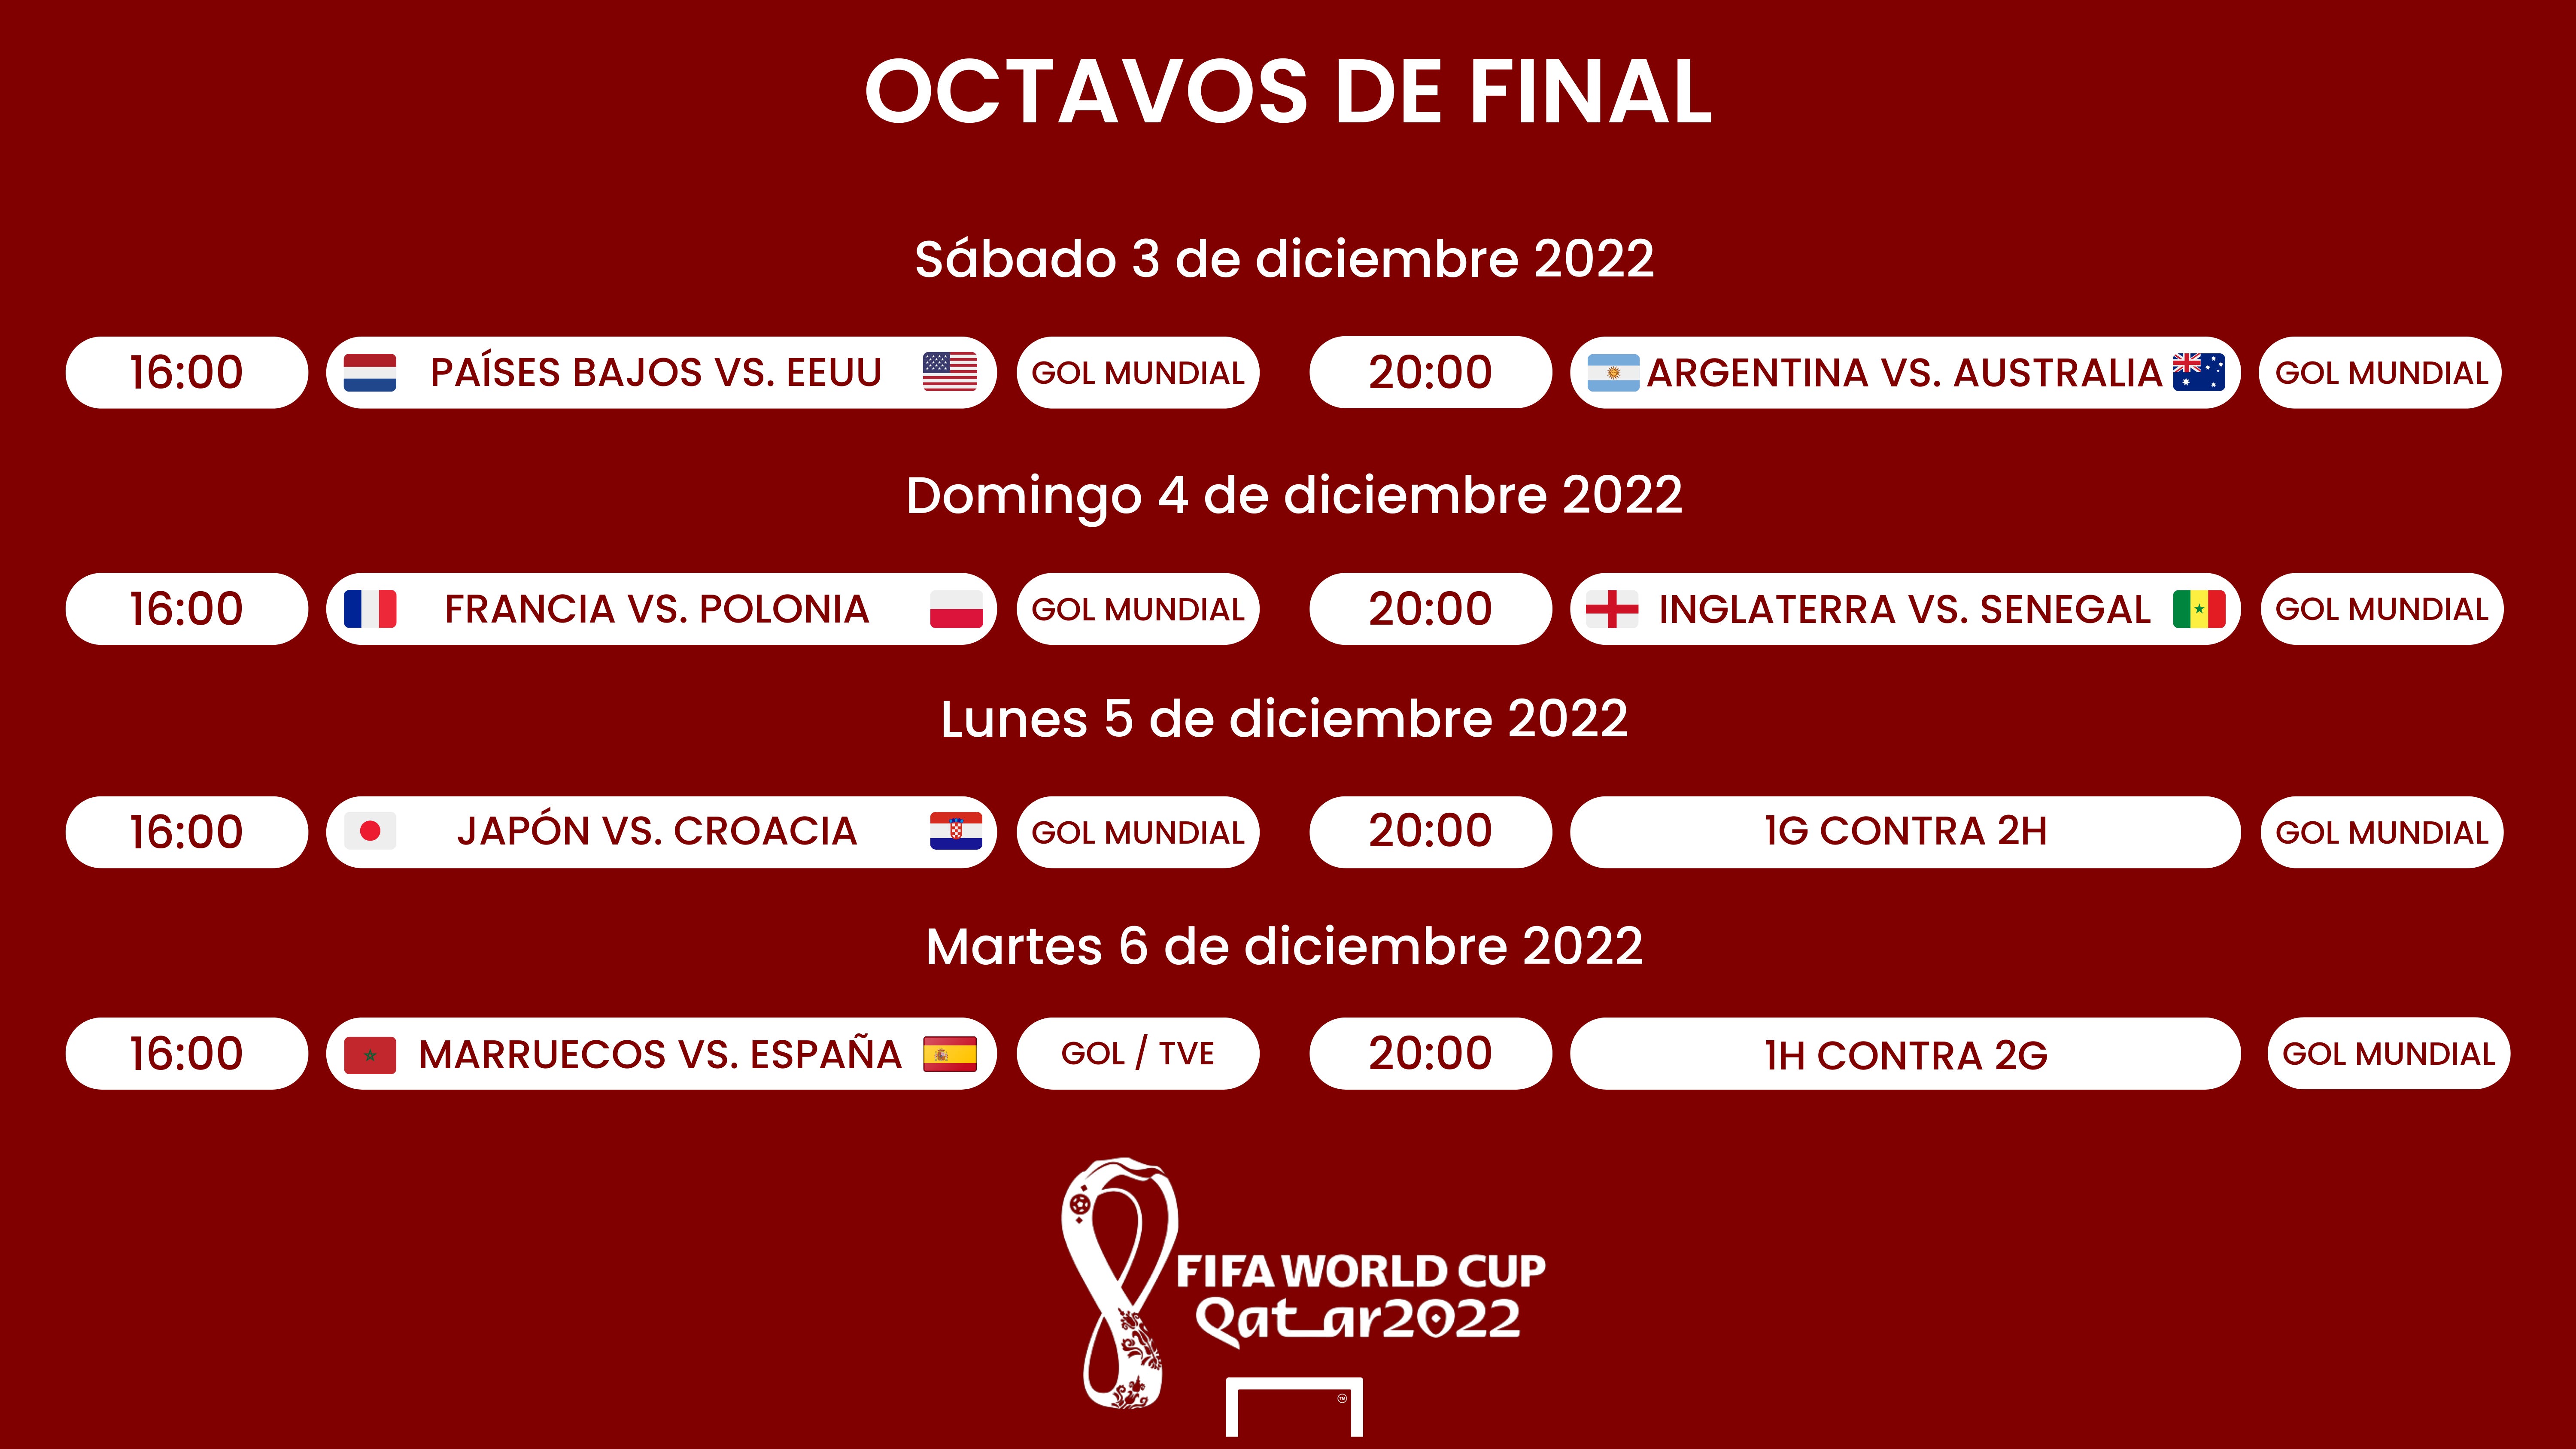 Embajador Persistente Las bacterias Octavos de final del Mundial Qatar 2022: Cuándo son, selecciones  clasificadas, partidos, fechas, horarios y resultados | Goal.com Espana